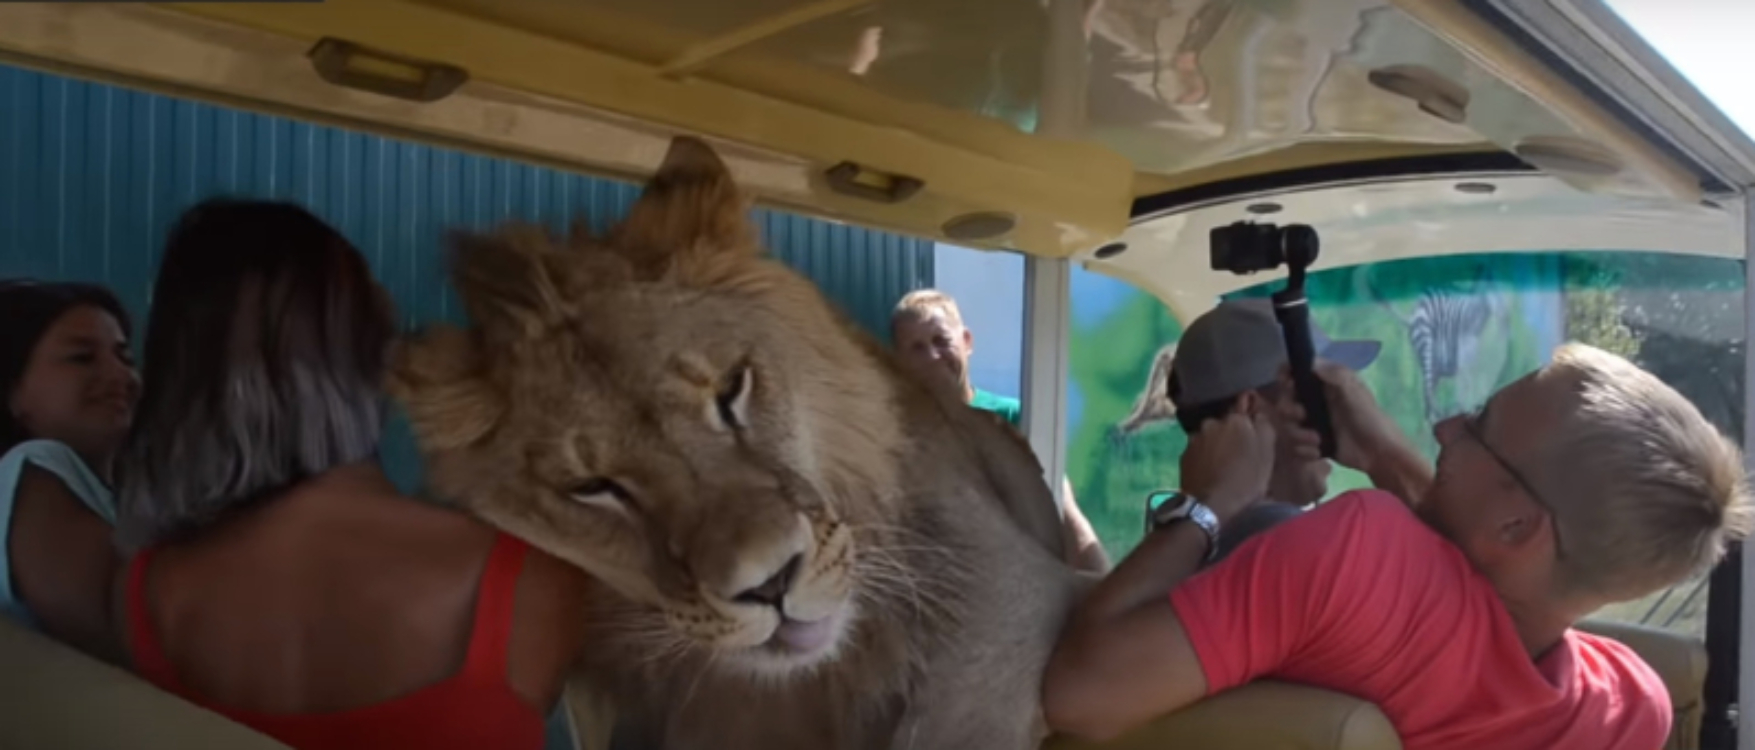 Leão invade jipe com turistas… e tem uma reação surpreendente!